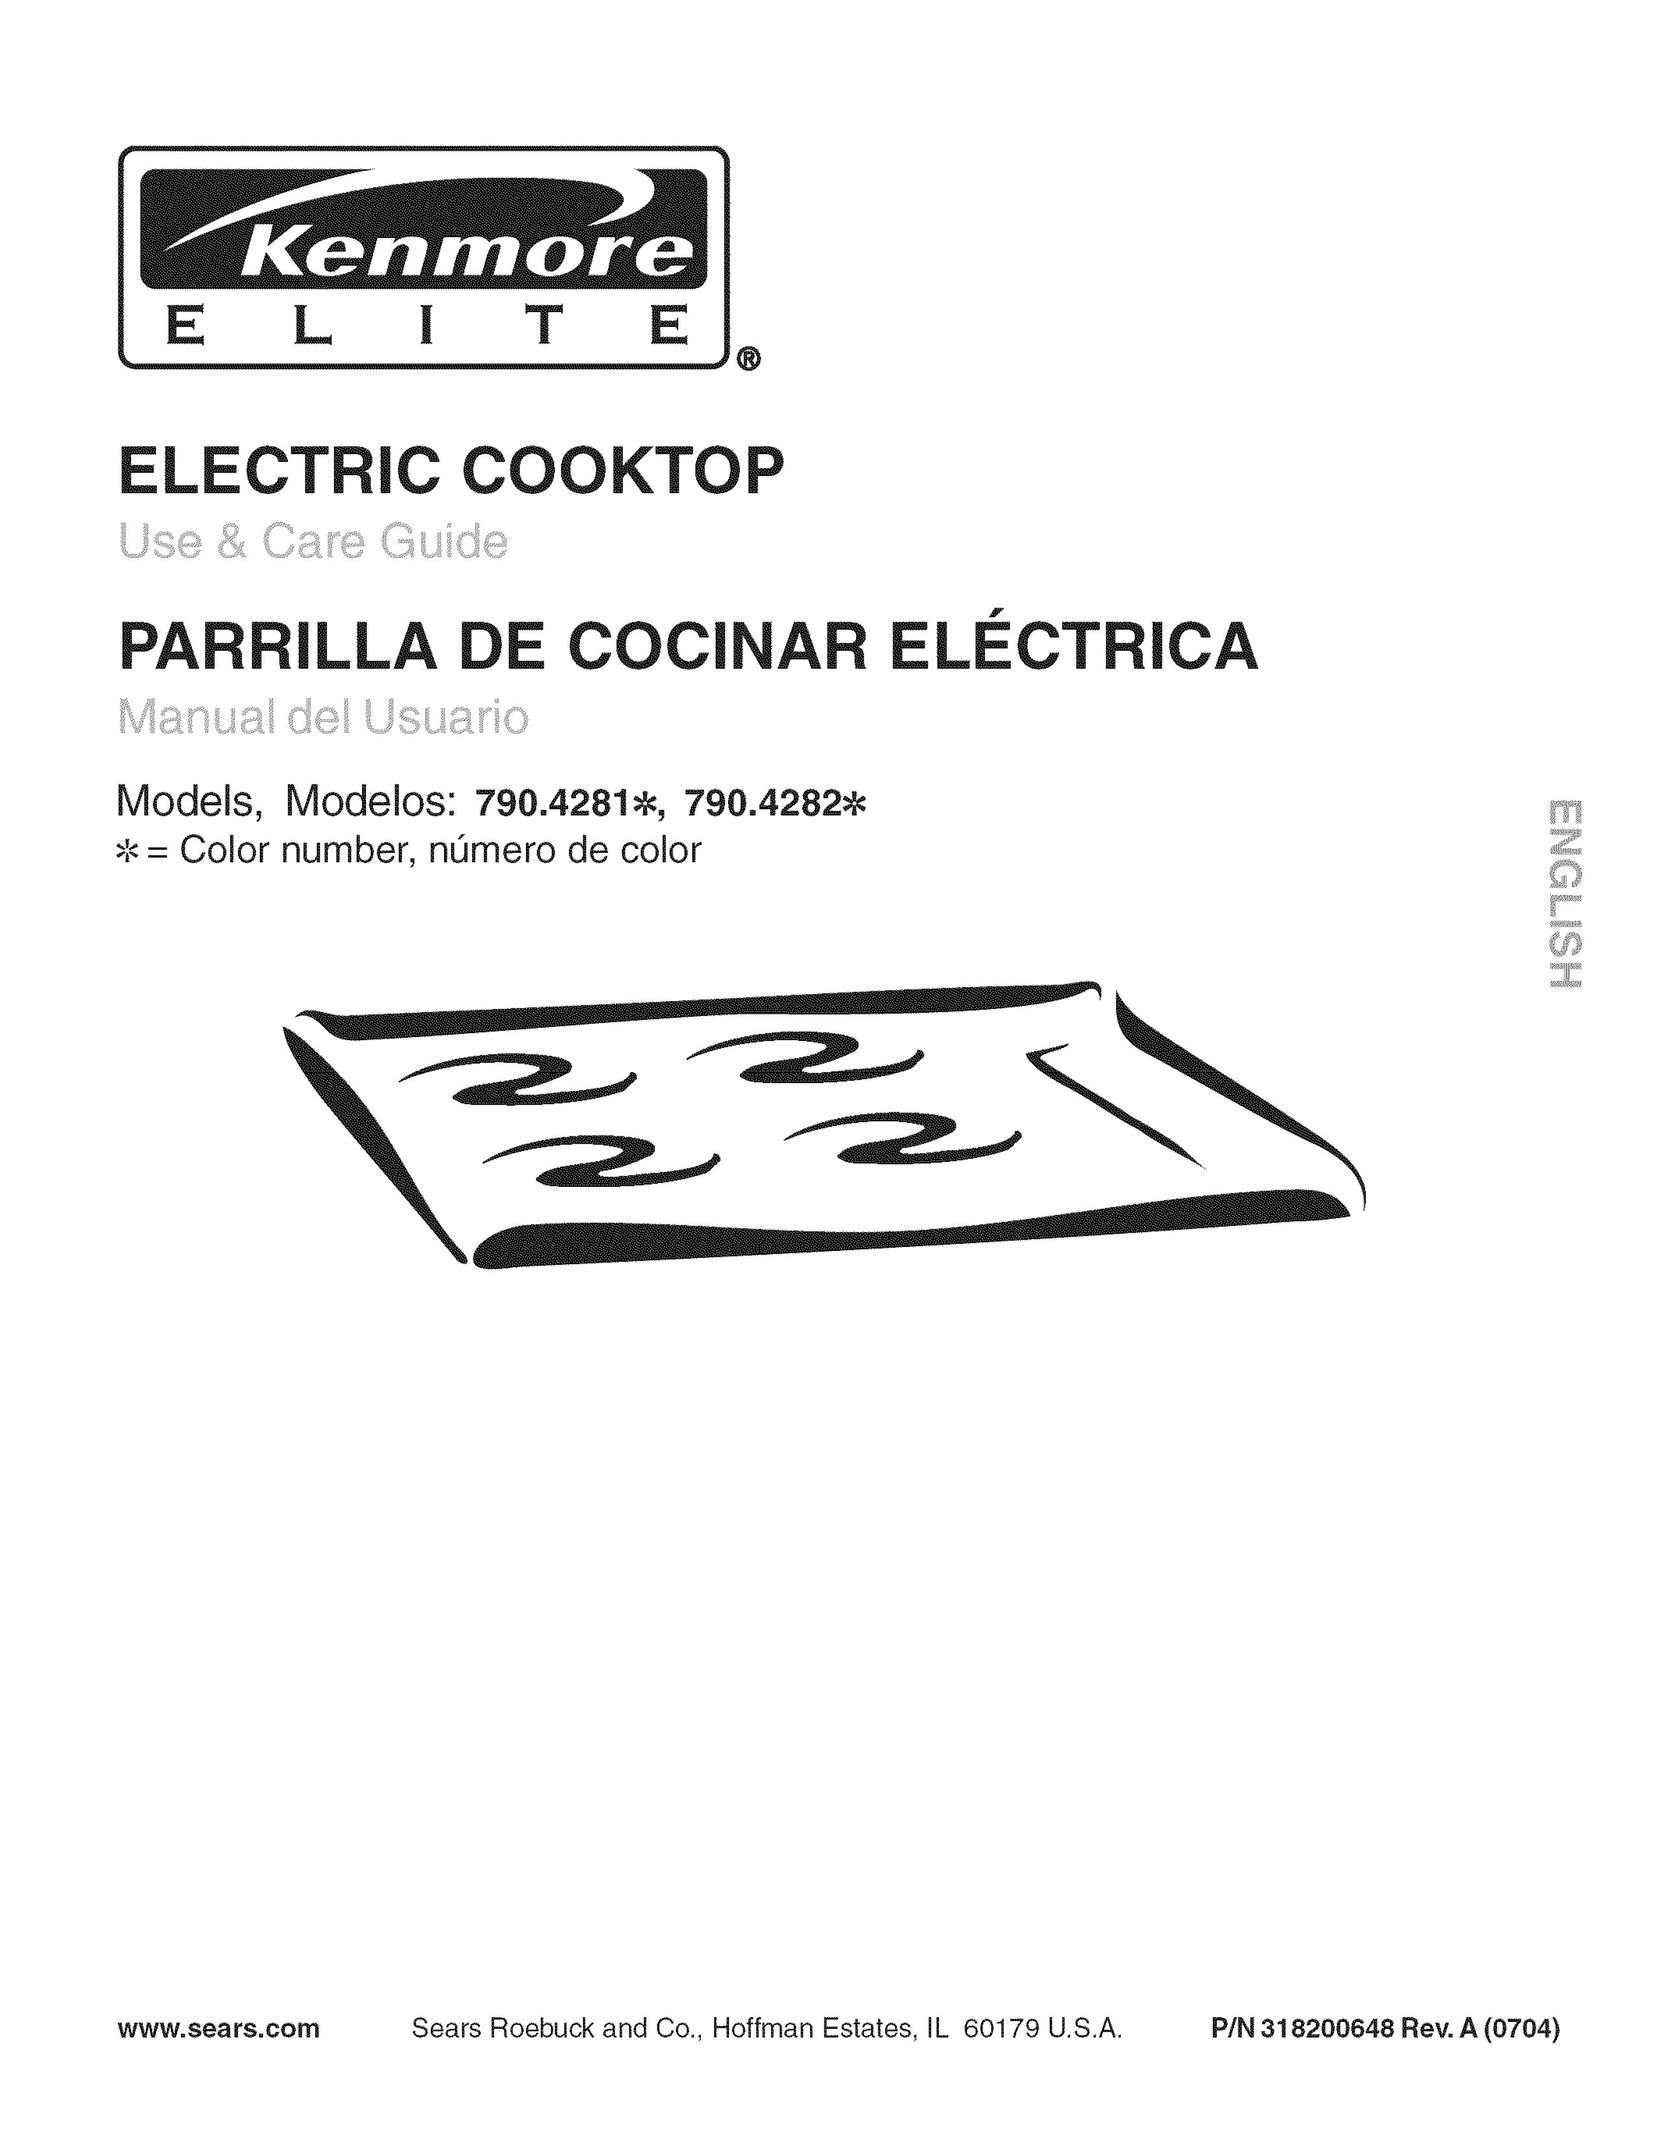 Kenmore 790.4281 Cooktop User Manual